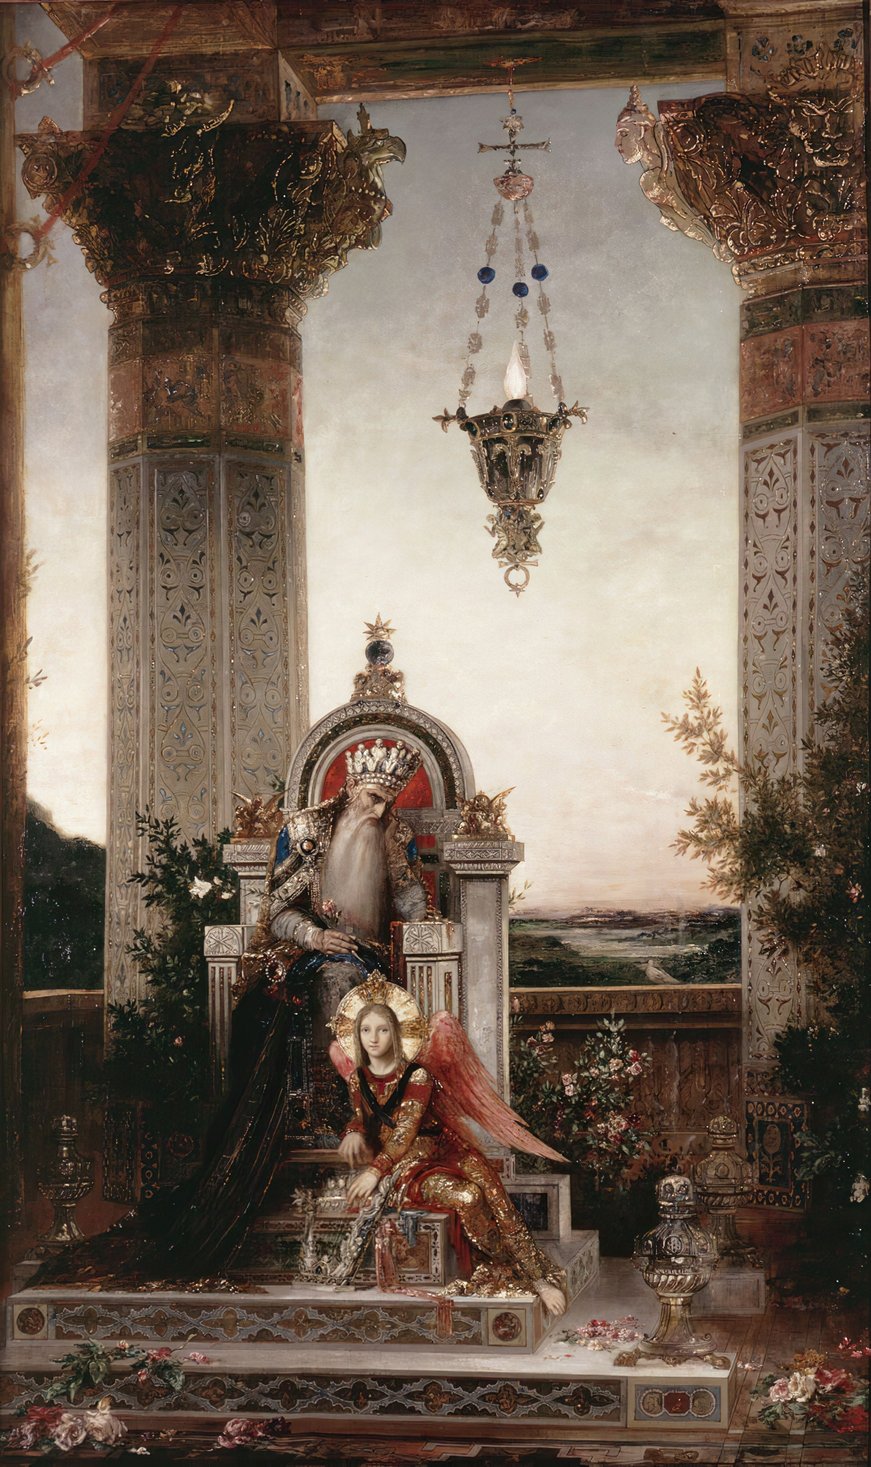 King David (1878)